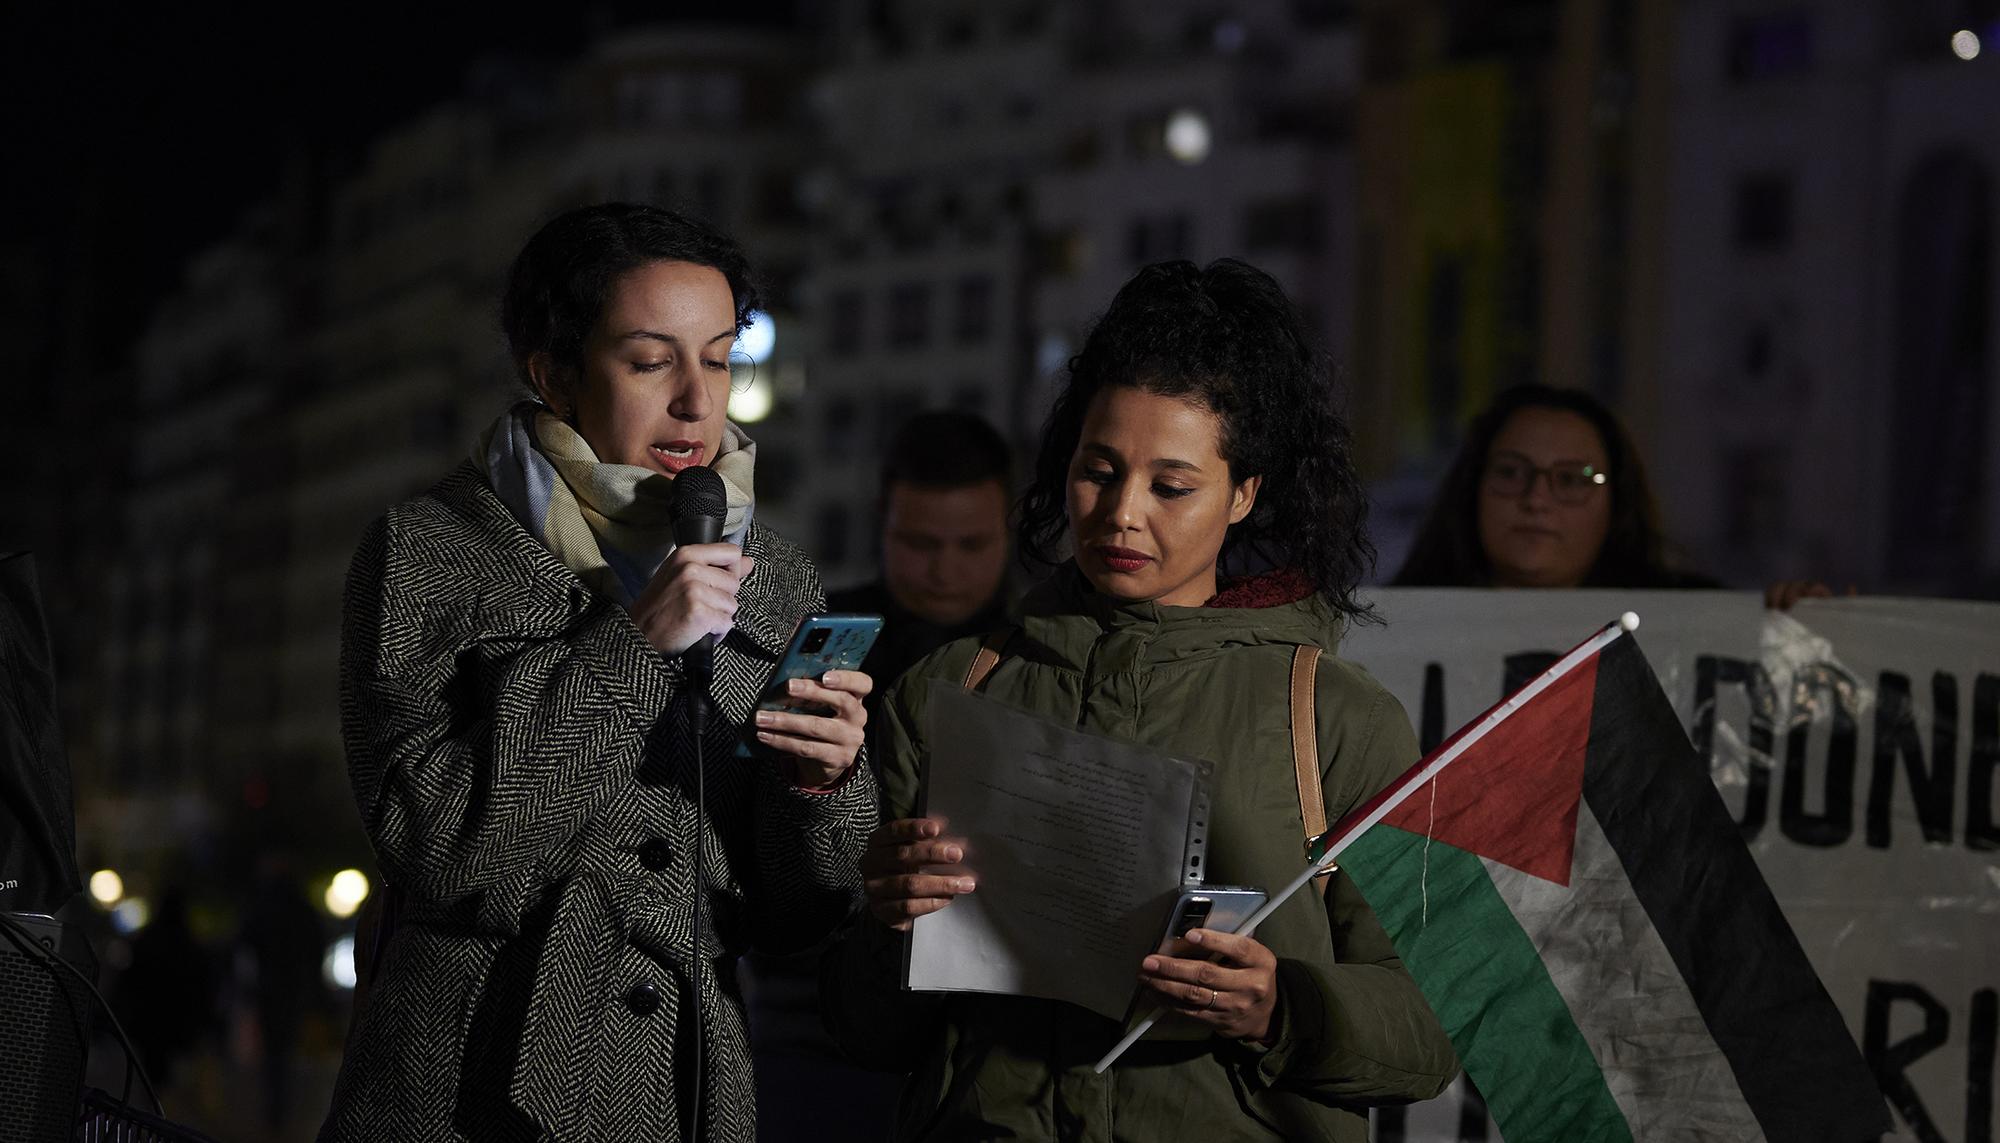 La Assemblea Feminista de València convocó una concentración en la noche del 24 de noviembre que recorrió el centro de la ciduad. - 4